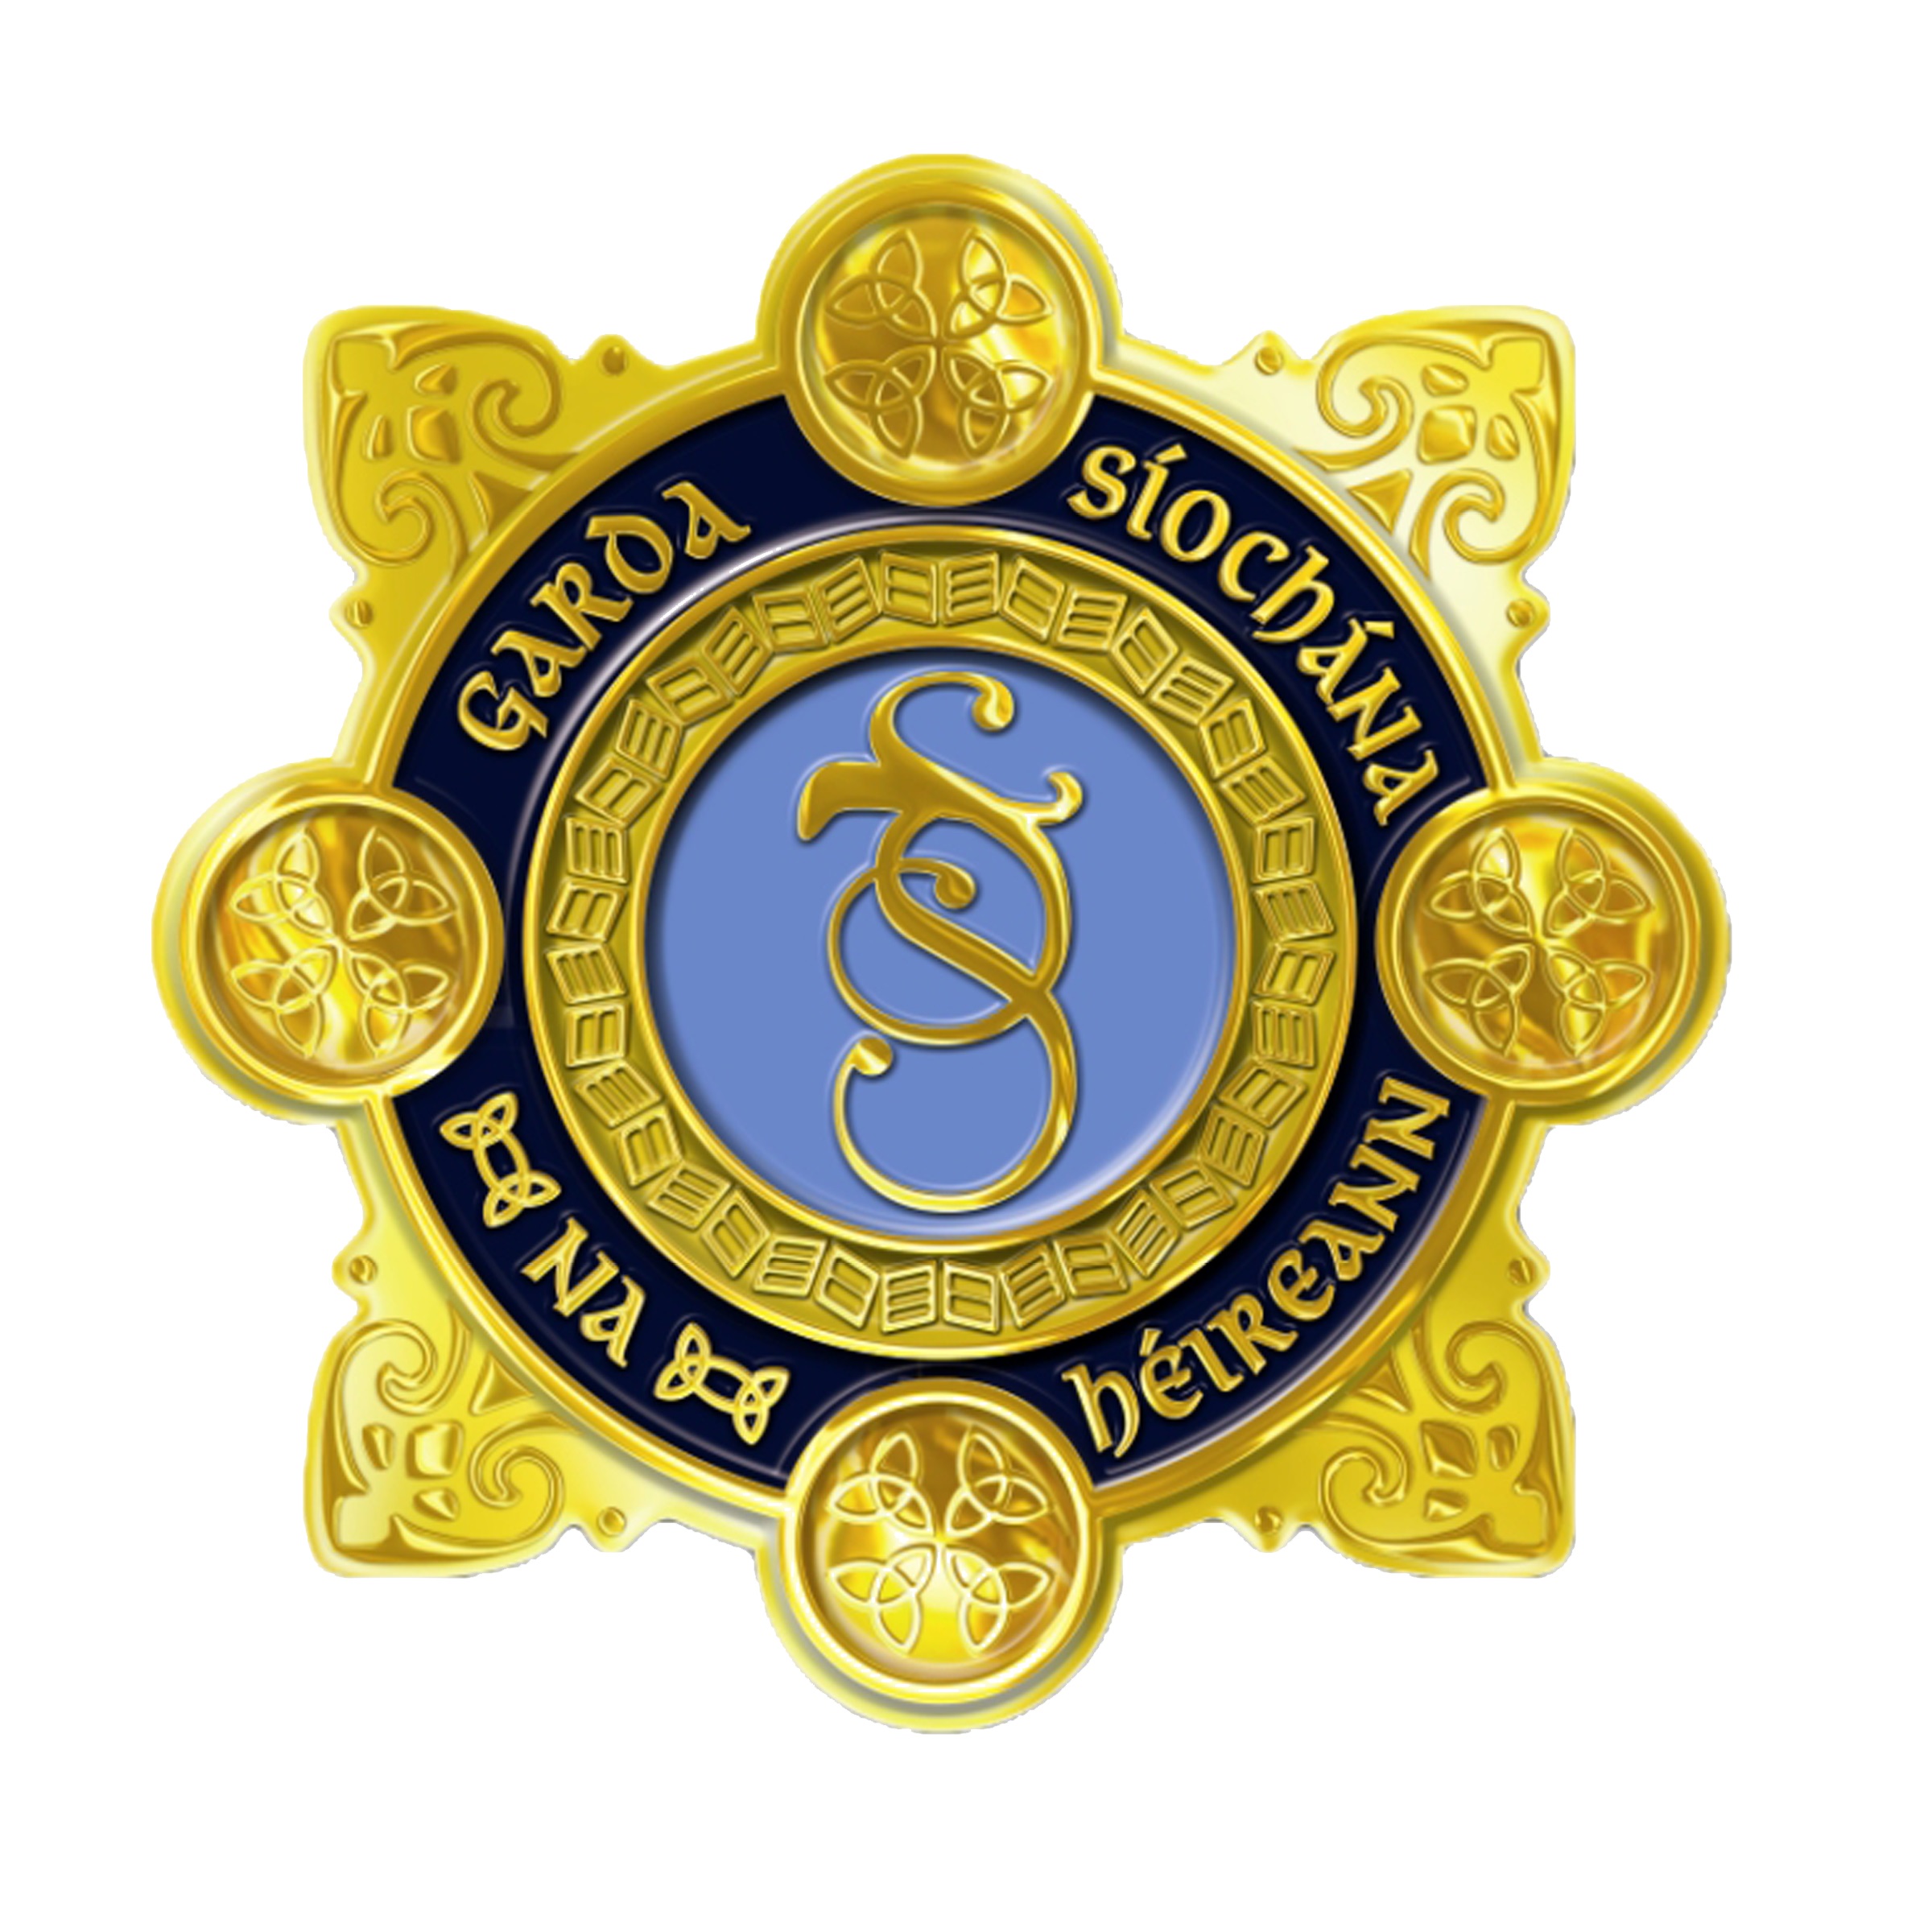 Garda_Logo